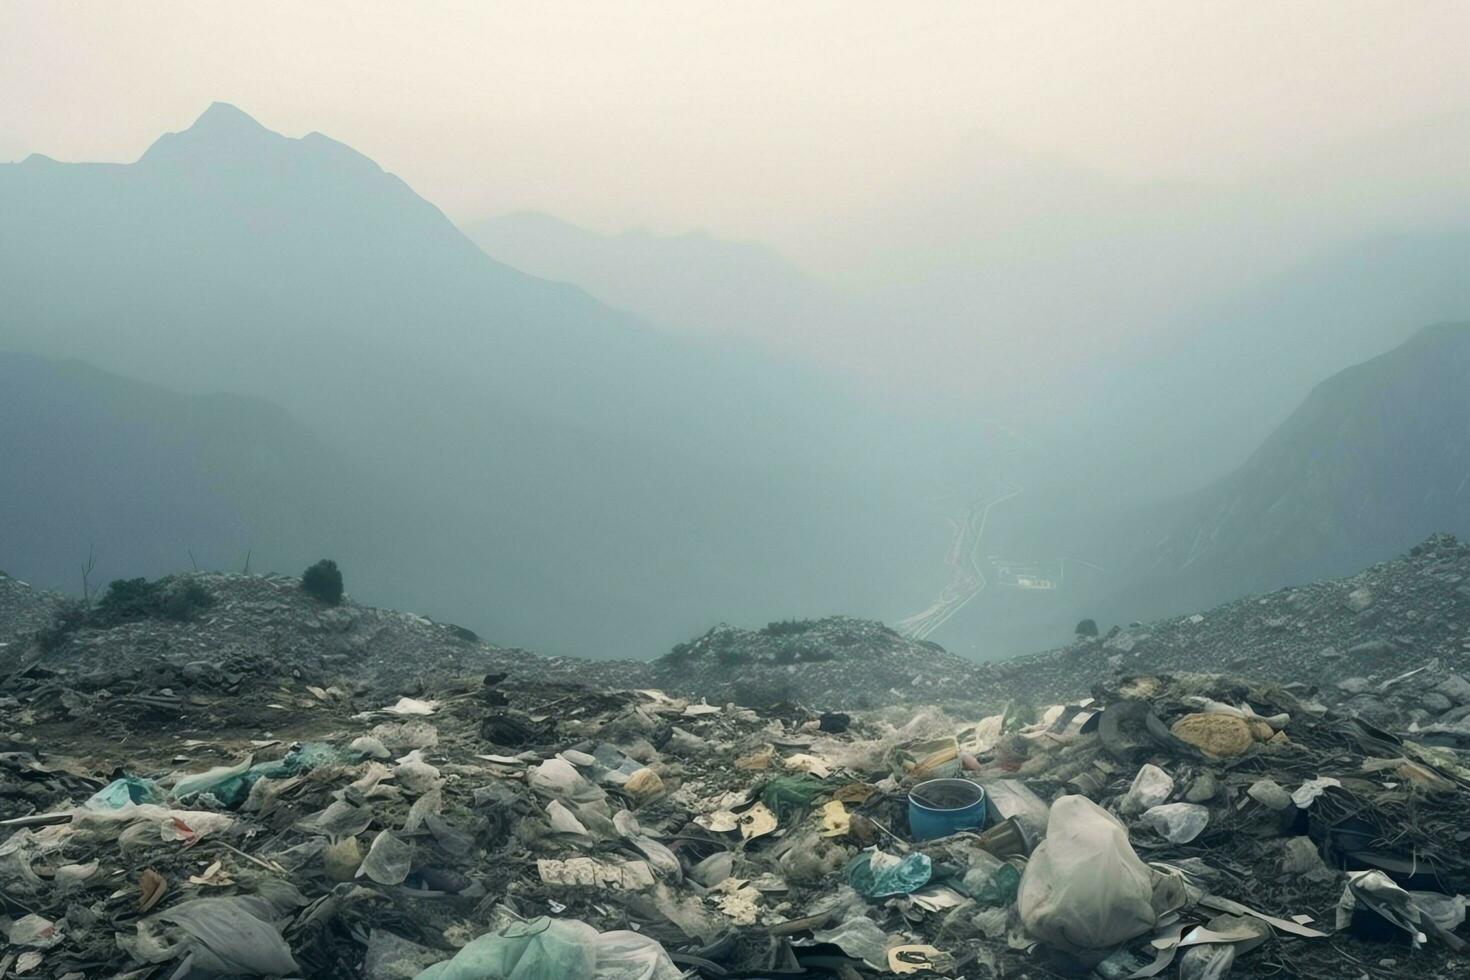 ambiental problema el plastico basura o basura en el montaña desde global calentamiento contaminación concepto por ai generado foto